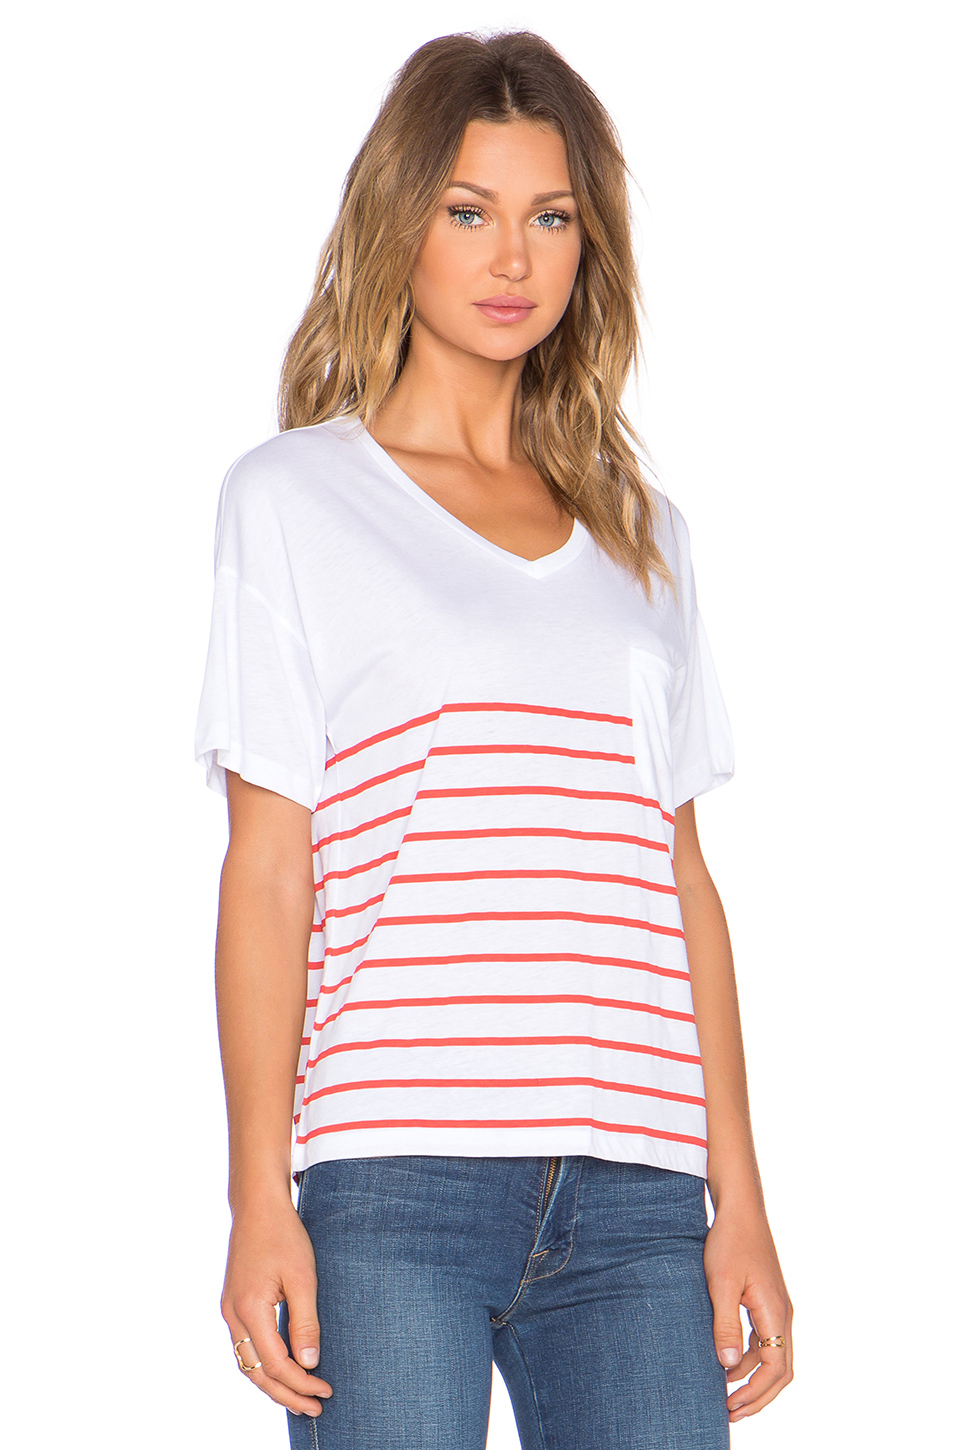 Lyst - Zoe Karssen Striped Cotton T-Shirt in Orange